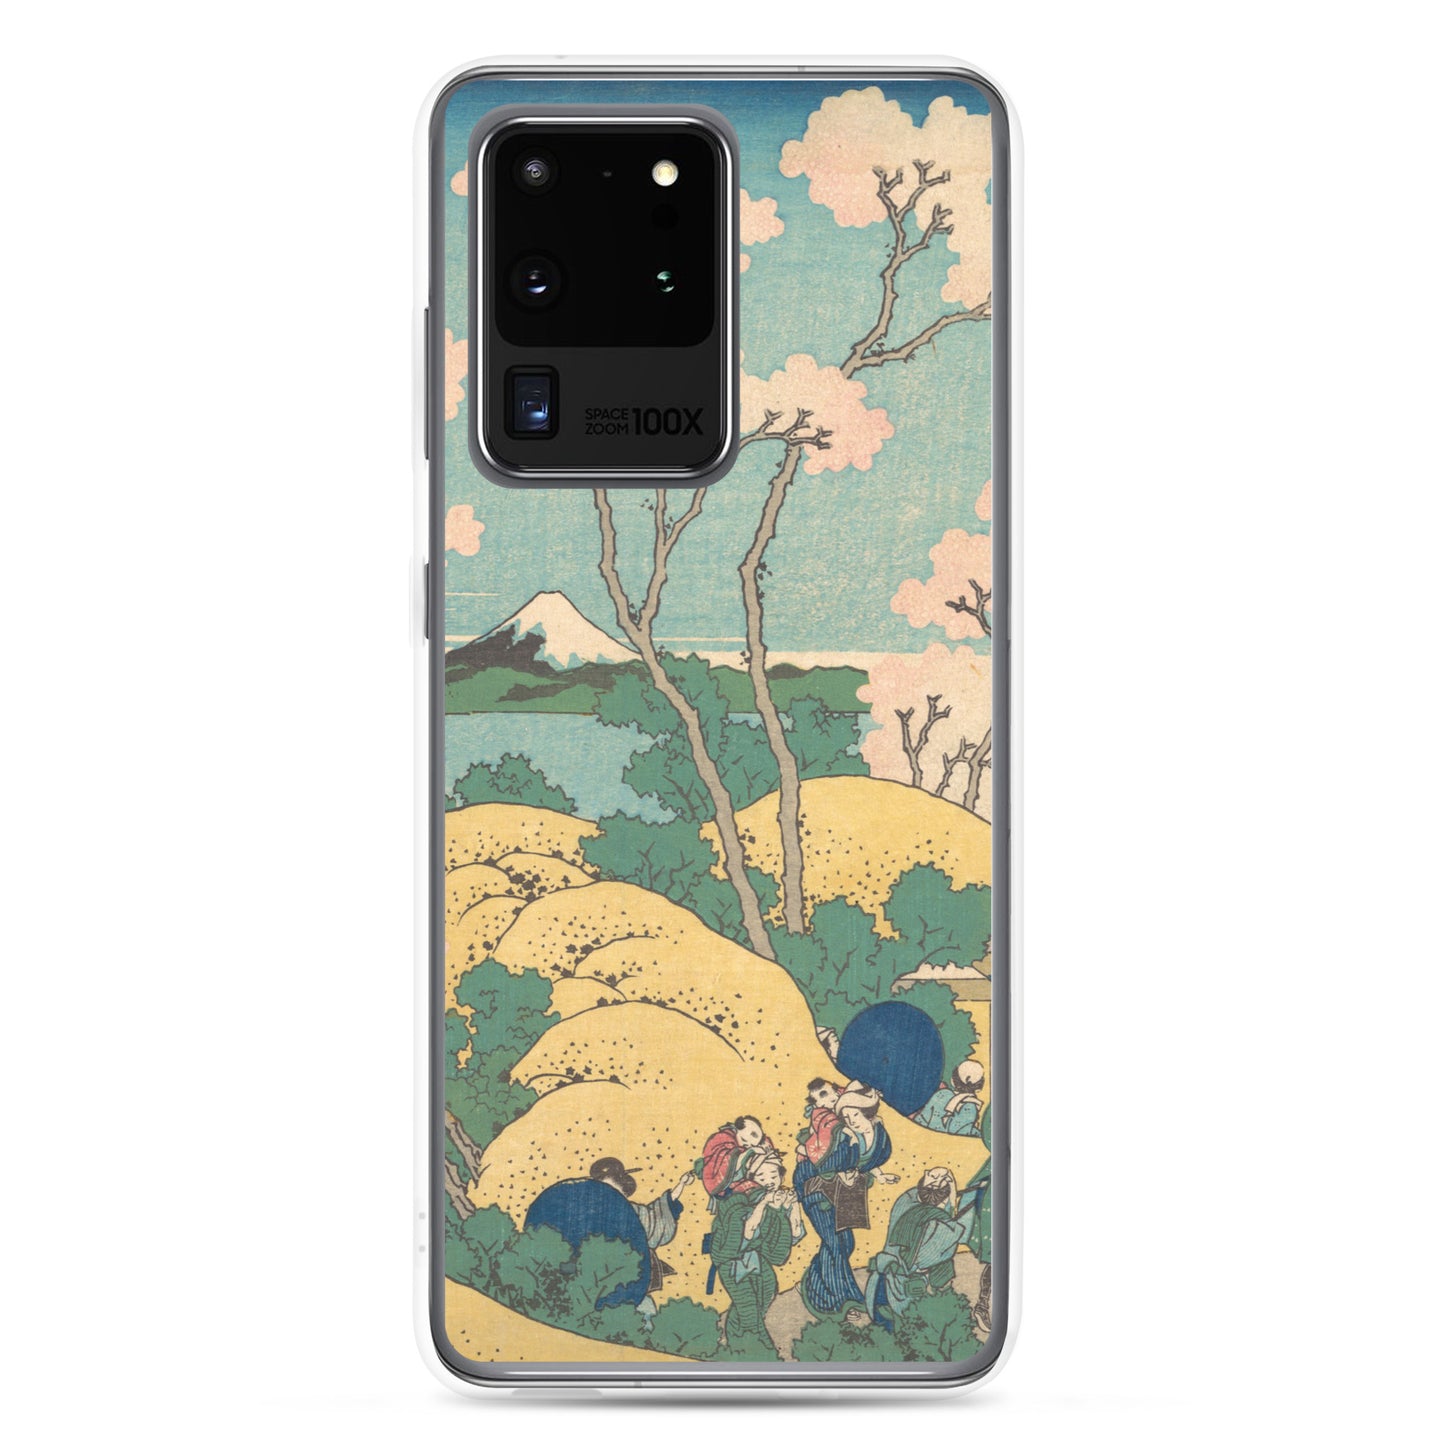 Samsung Galaxy Case Tokaido Shinagawa Gotenyama no Fuji B [Fugaku Sanjurokkei]